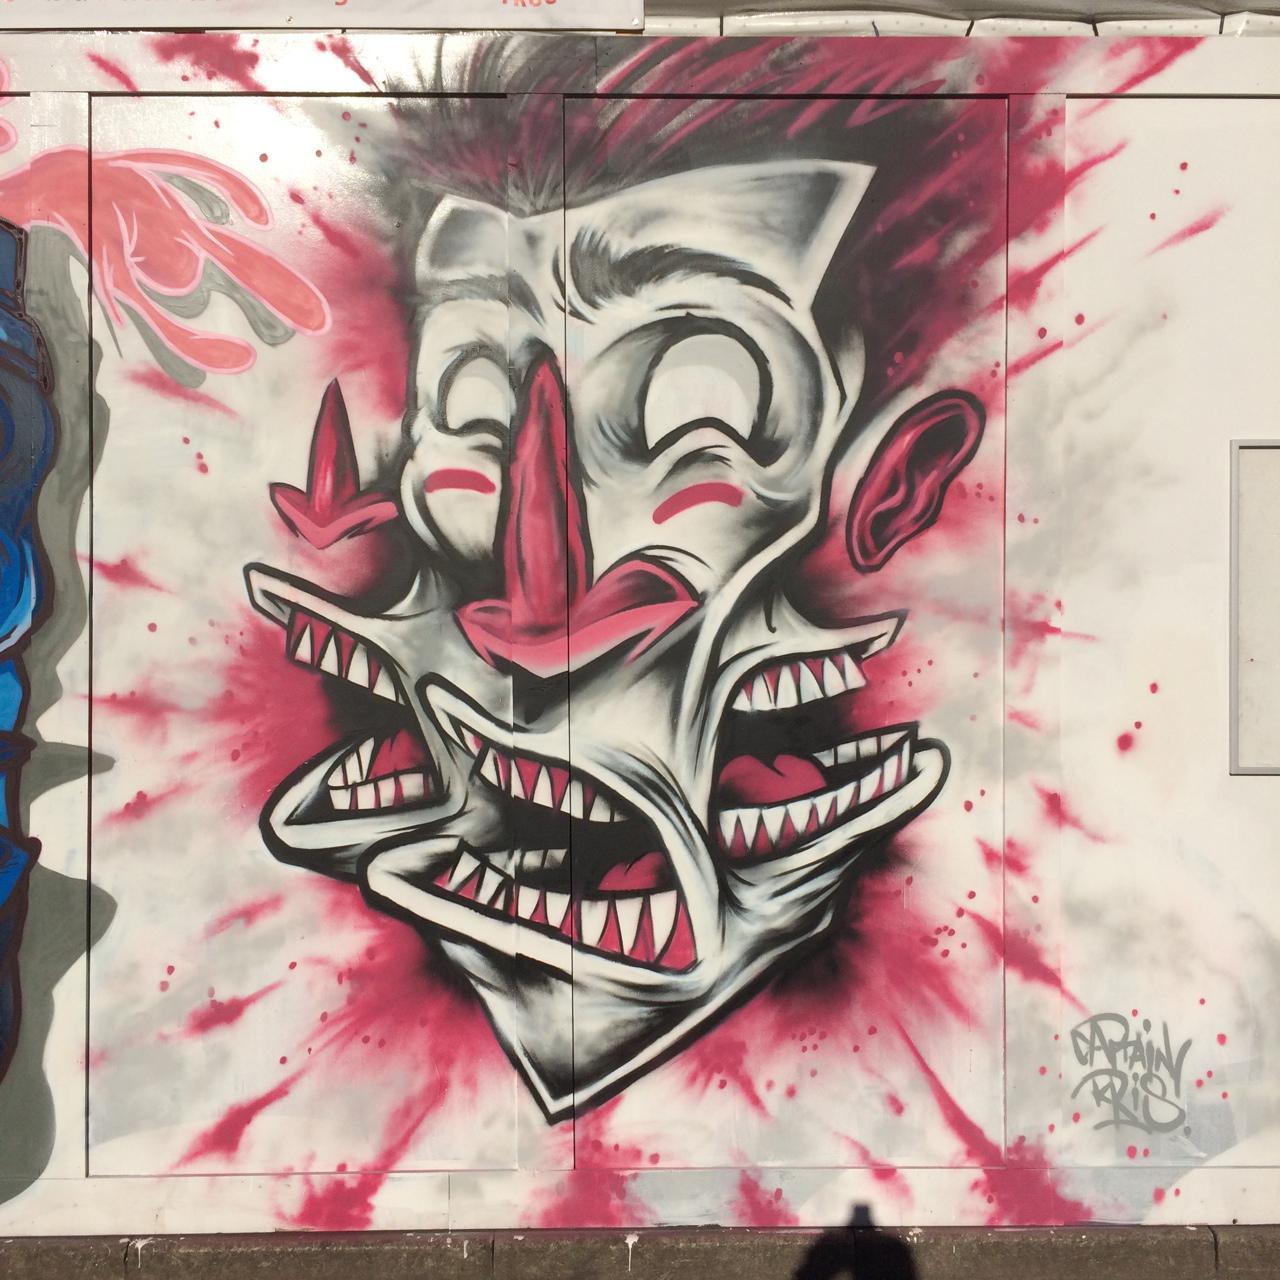 GSA |  piece by captainkris
http://blog.globalstreetart.com/post/130276654126/the-bigger-picture-projected-art-and-bboy-battles
#graffiti #art #streetart #urbanart #clownart https://t.co/PChCkdW7GG